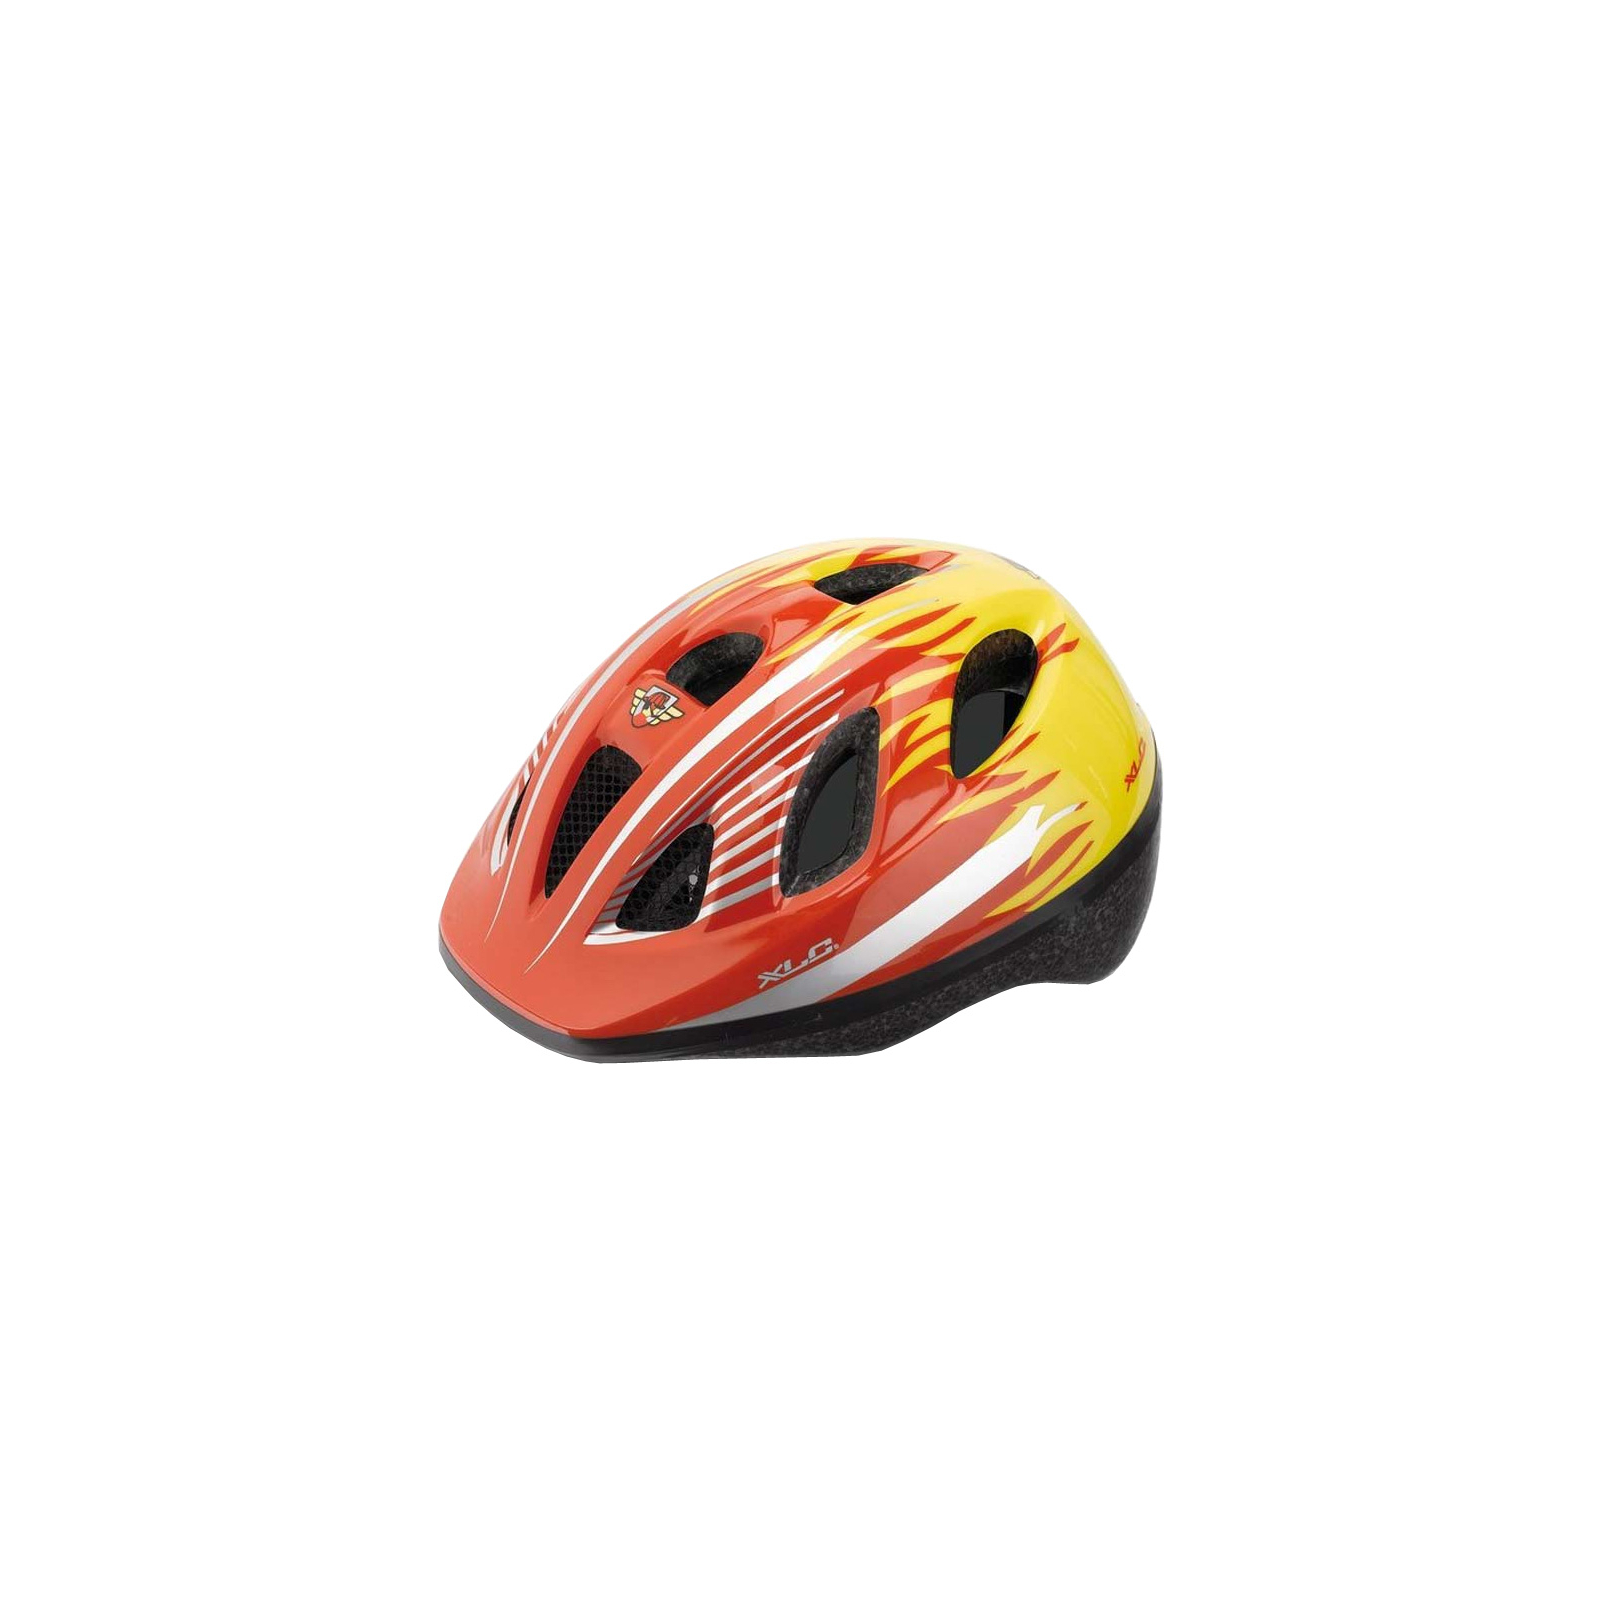 Шлем XLC BH-C16, красно-желтый, XS/S (49-54) детский (2500180000)